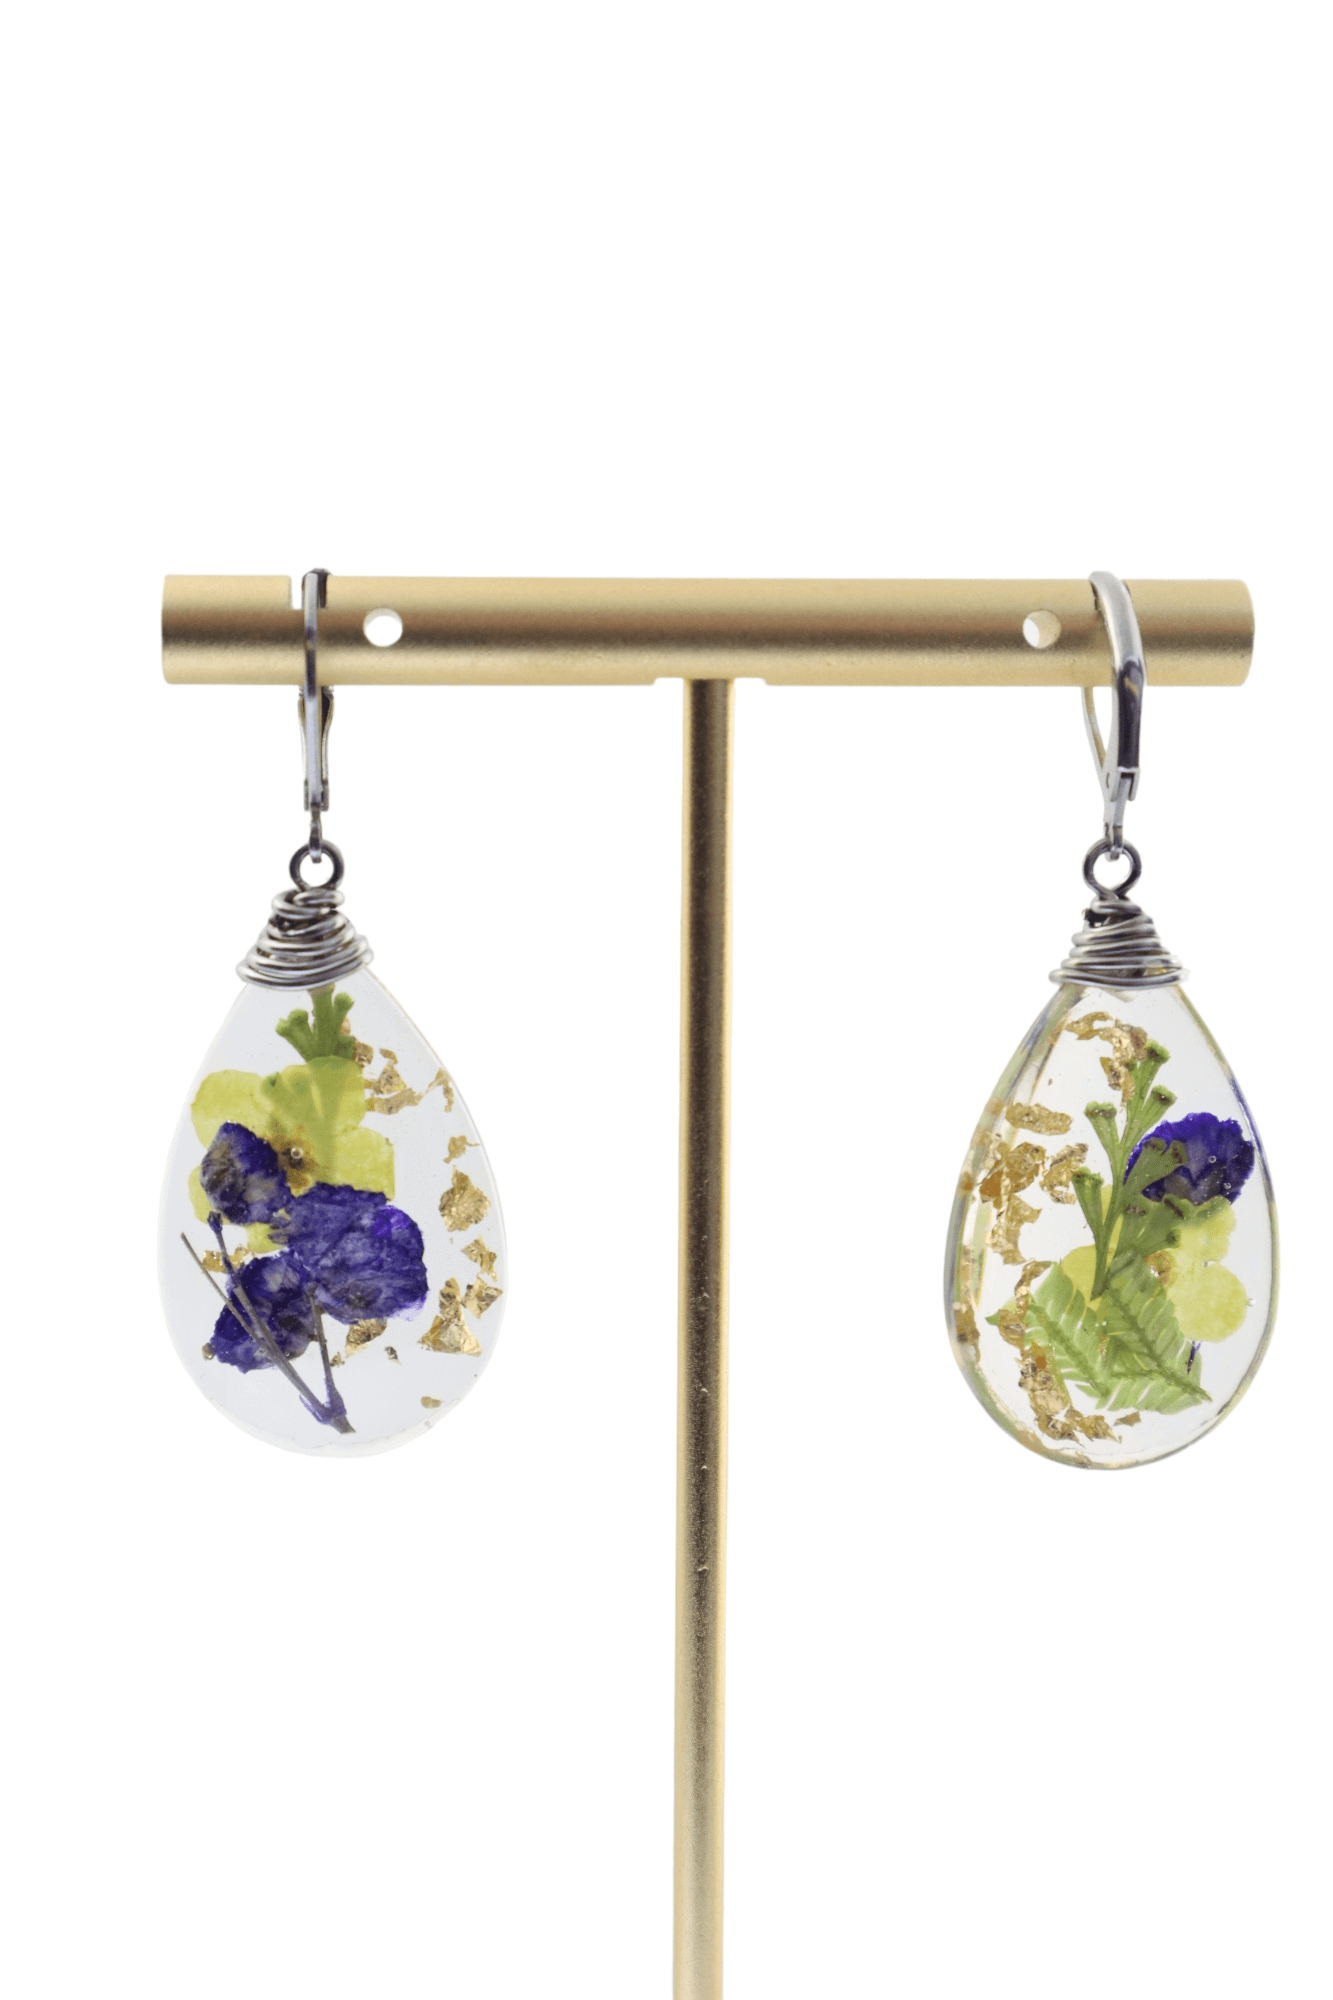 Garden-jewelry---vintage-inspired-jewelry---flower-jewelry---Kaleidoscopes-And-Polka-Dots